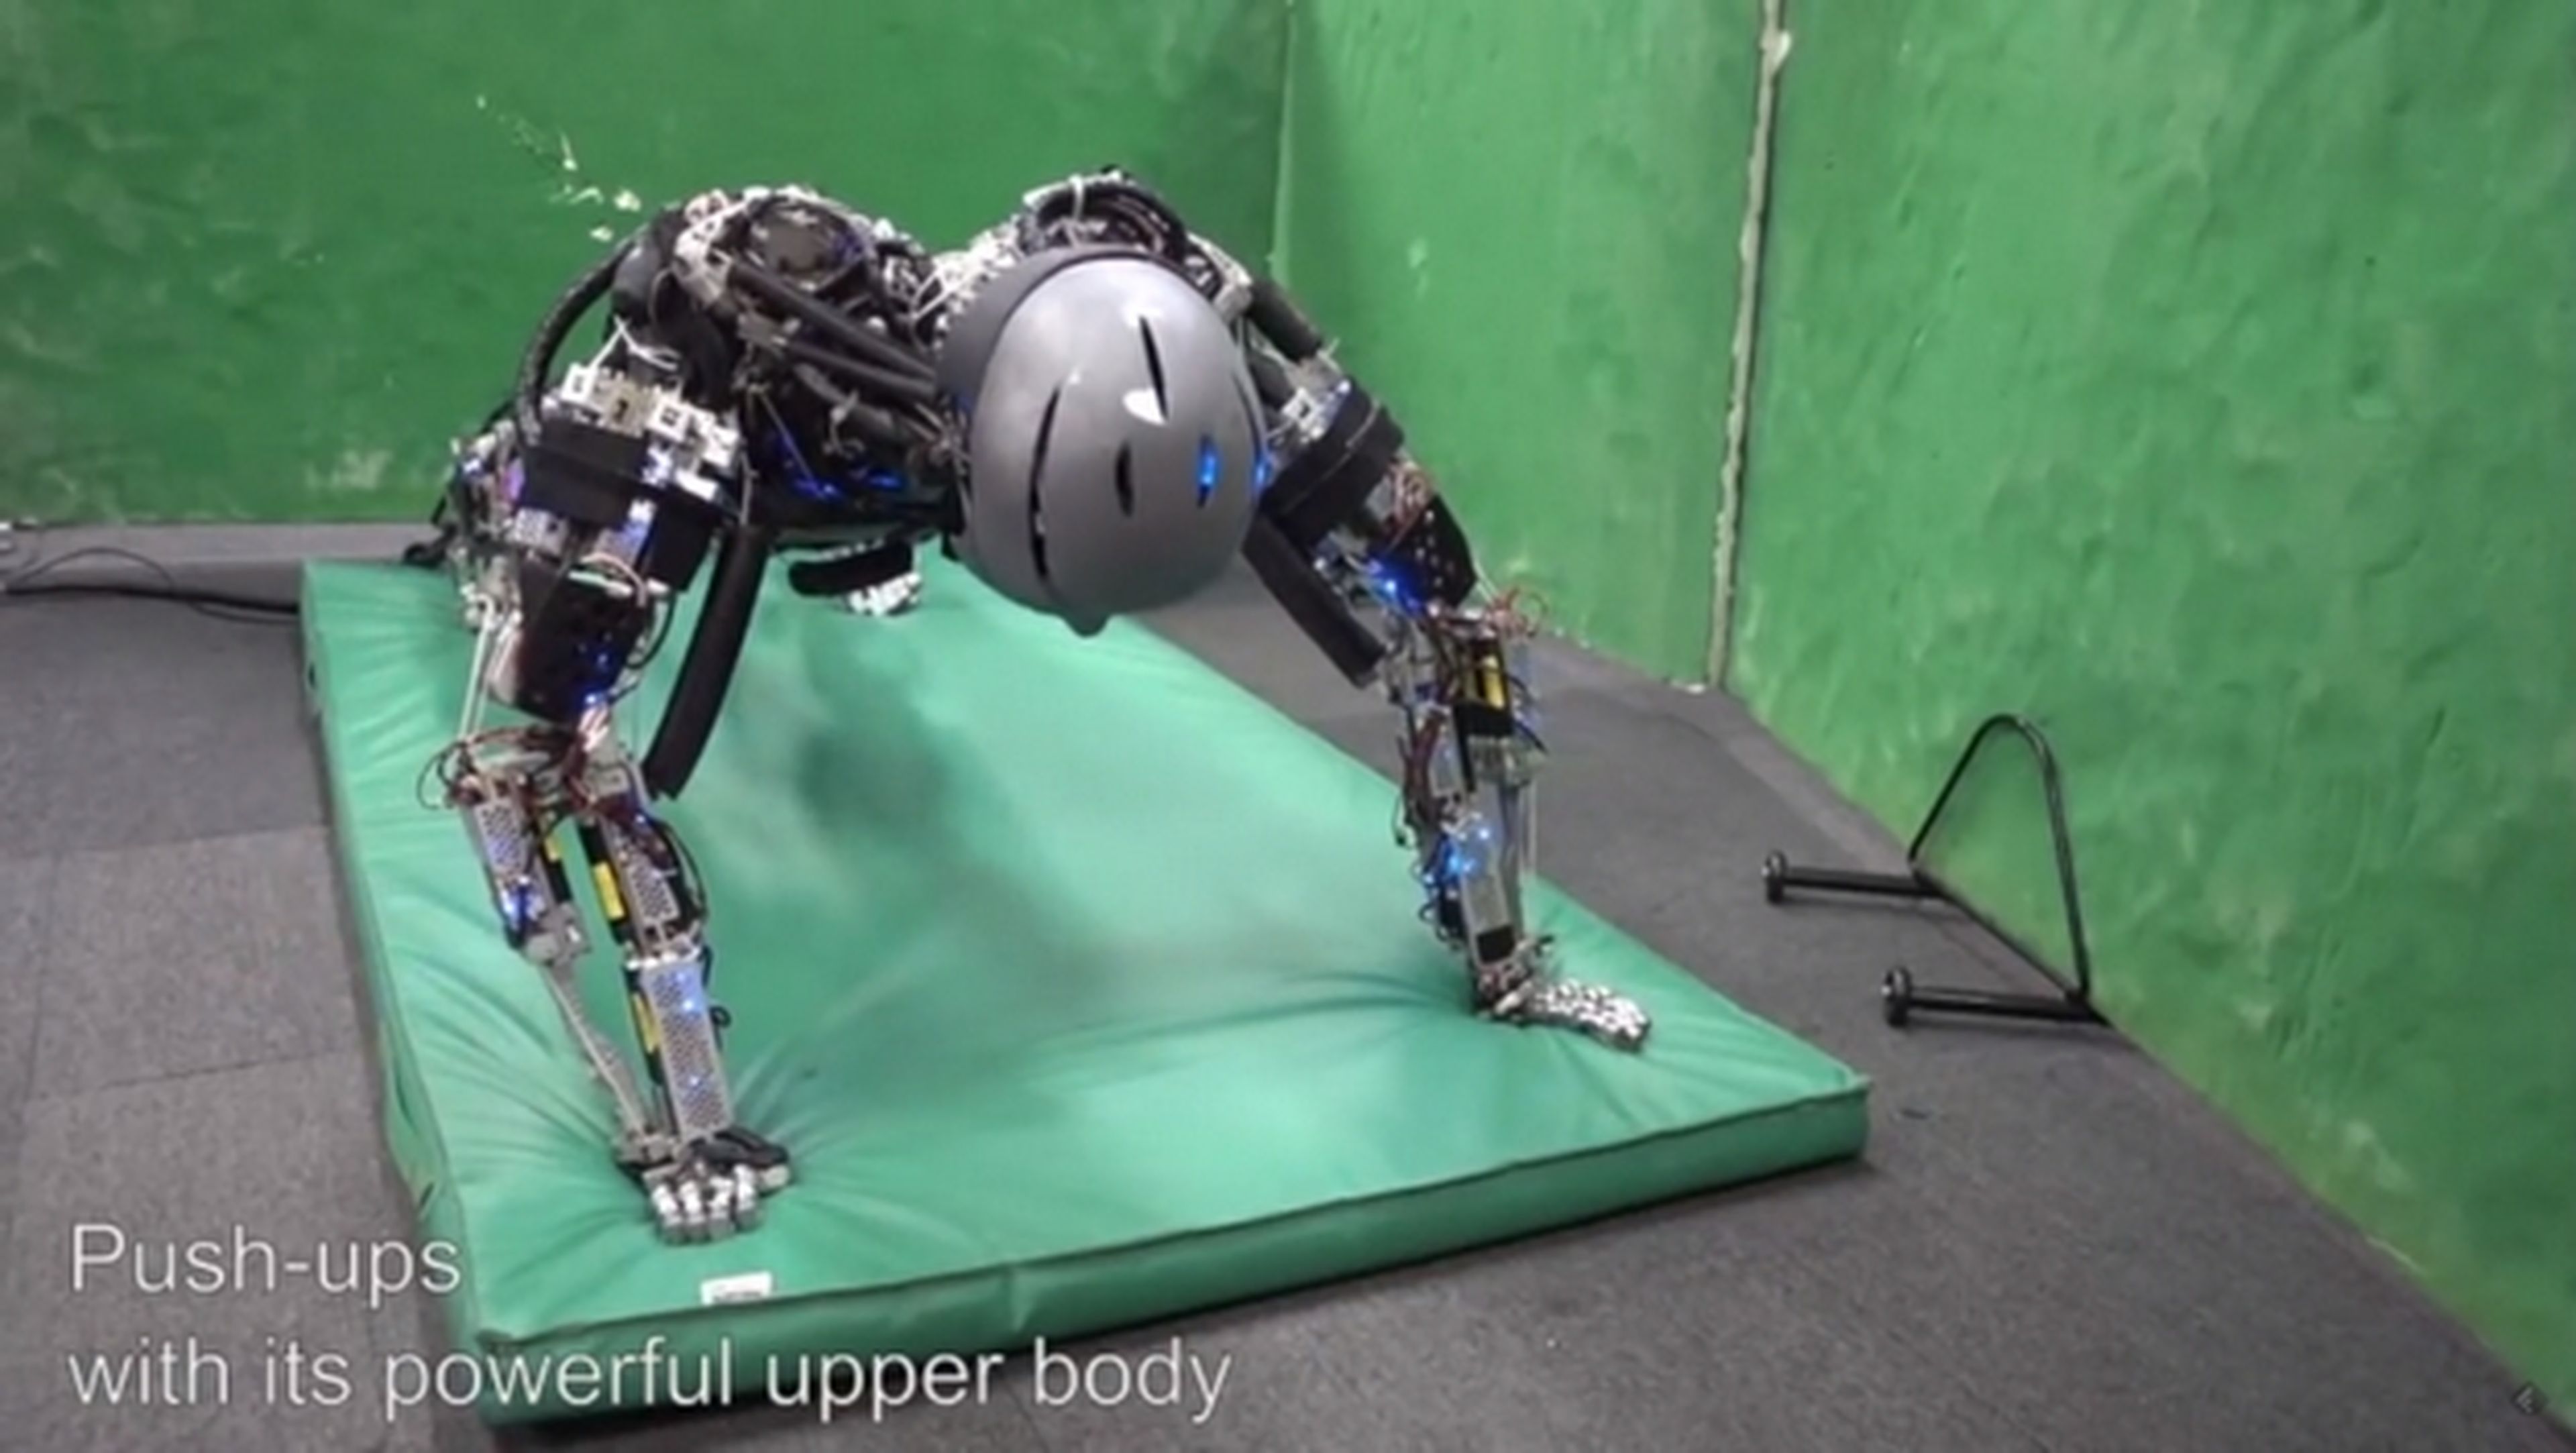 Kengoro y Kenshiro, los robots que sudan cuando hacen ejercicio